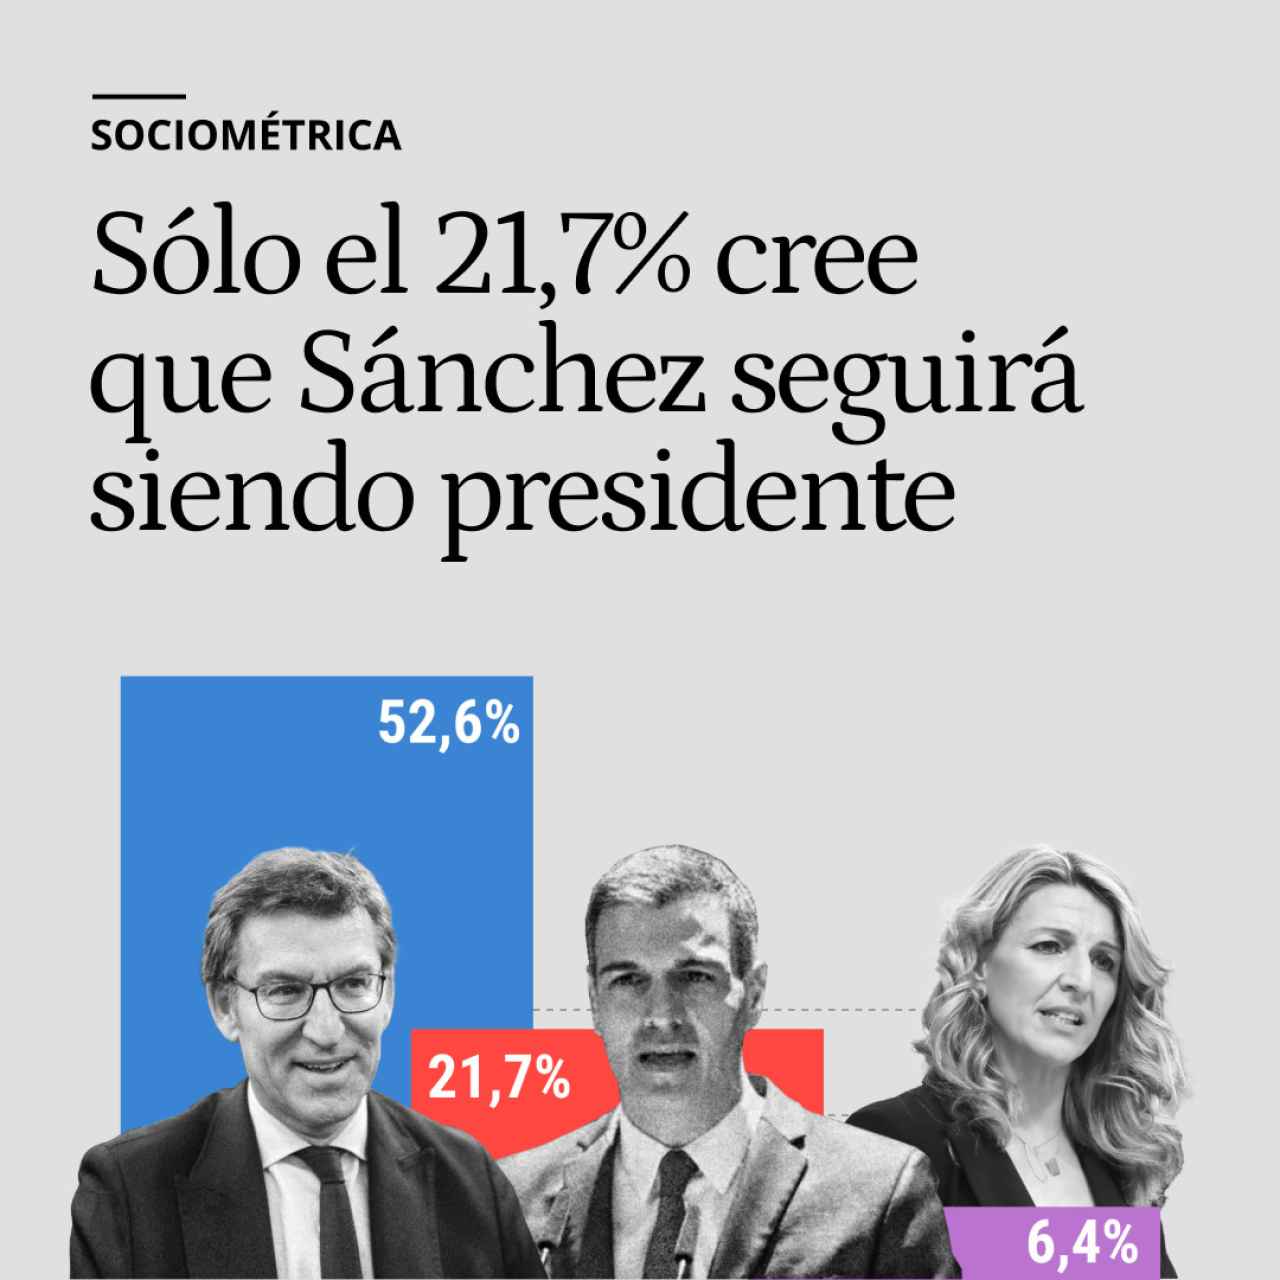 Sólo el 21,7% de los españoles cree que Sánchez seguirá siendo presidente tras las elecciones